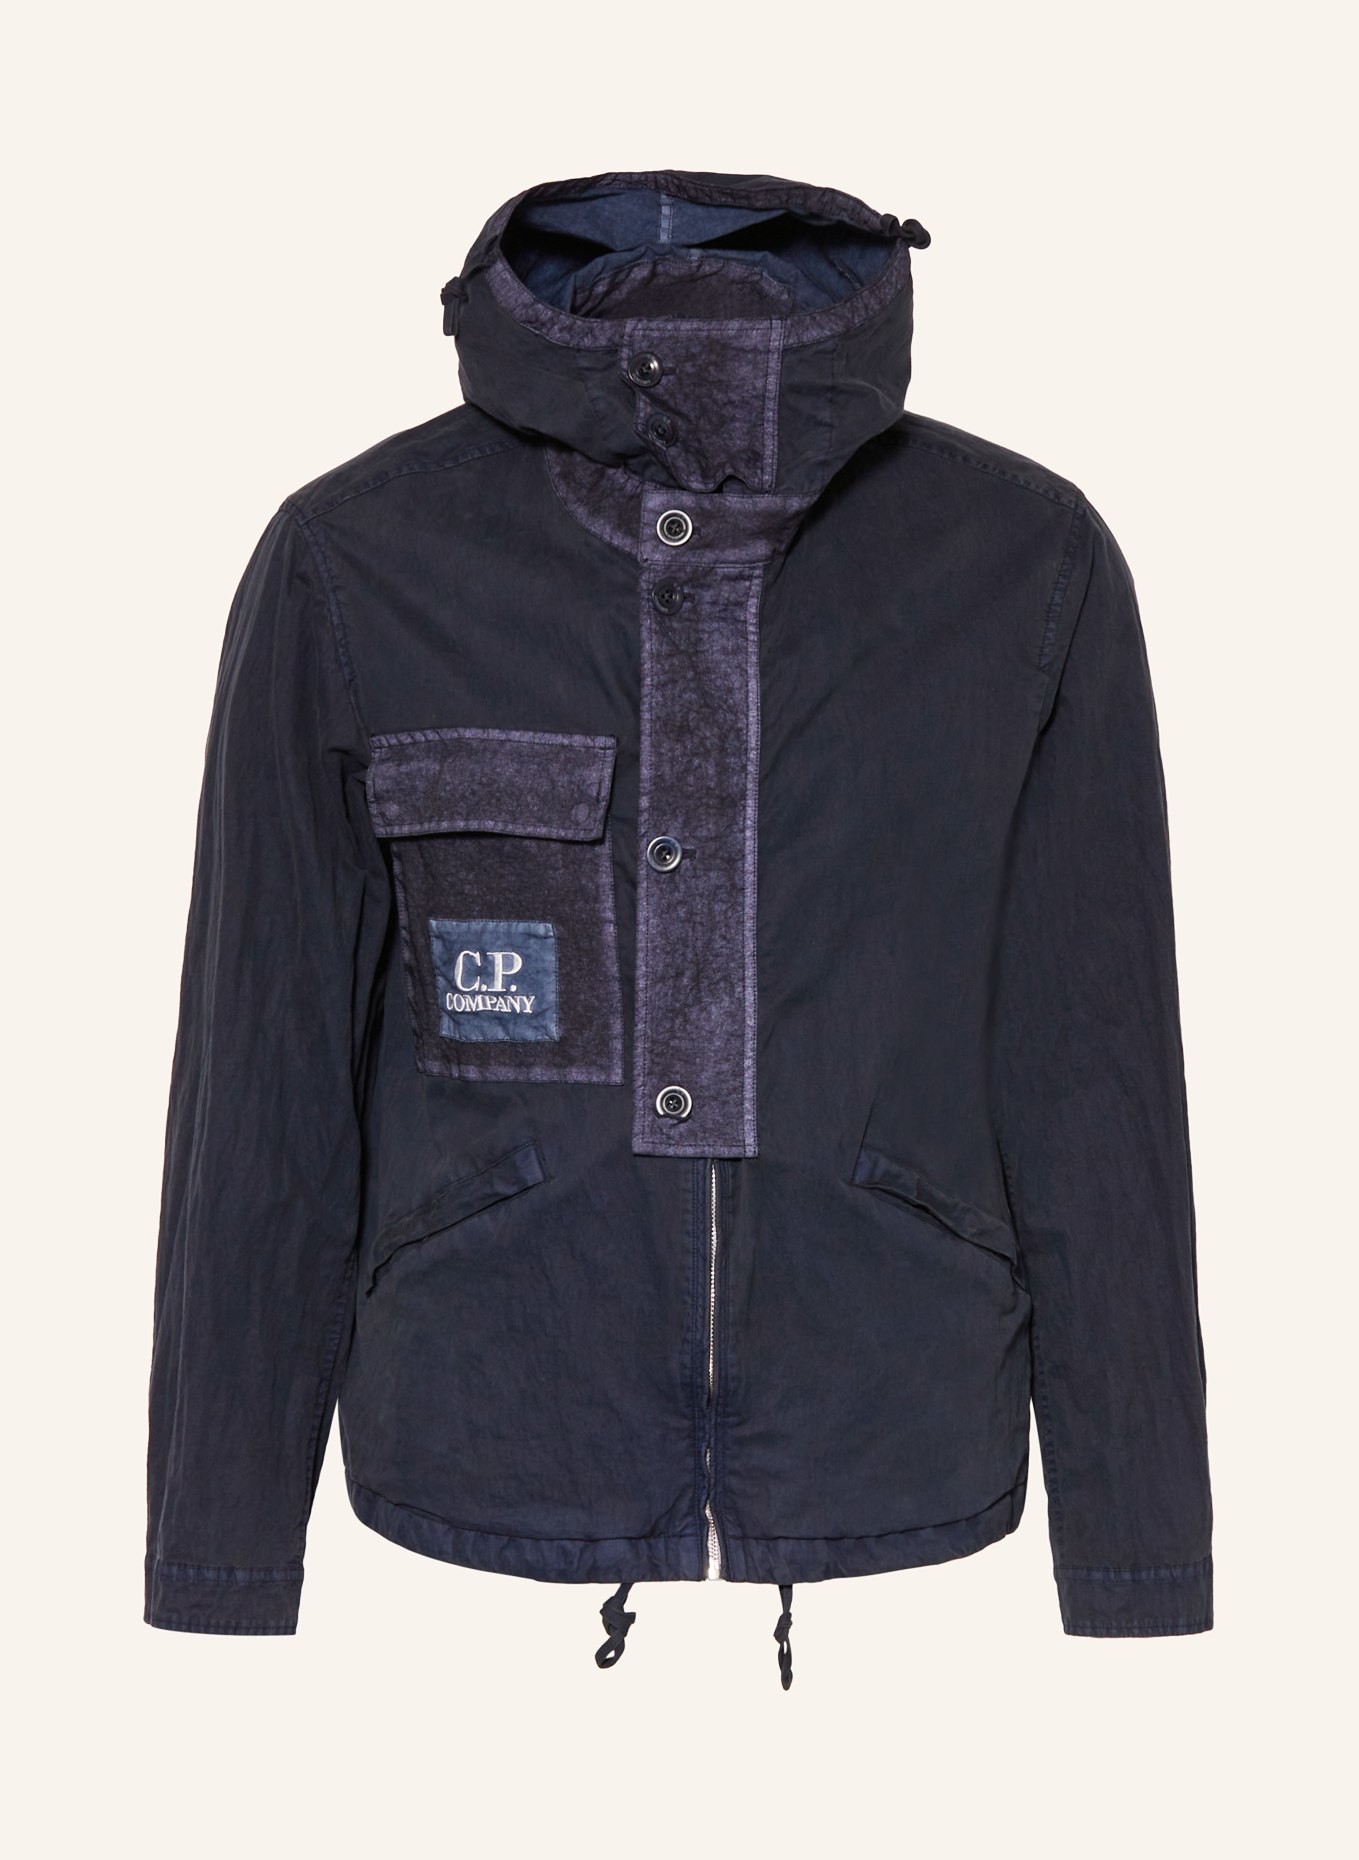 C.P. COMPANY Field jacket, Color: DARK BLUE (Image 1)